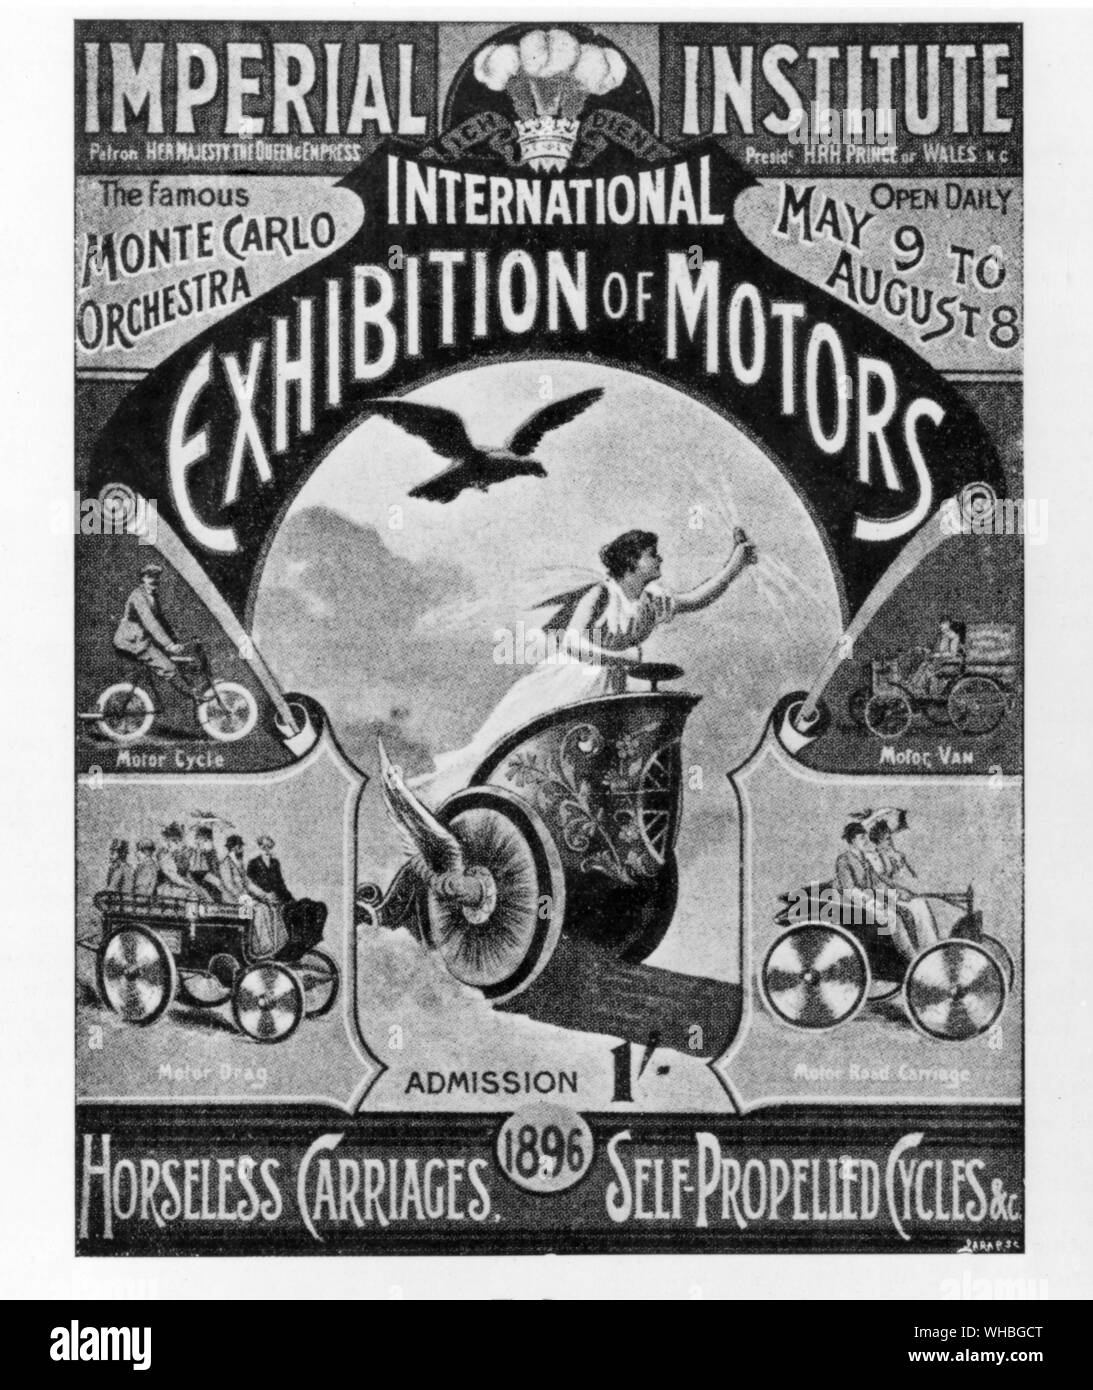 Imperial Institute - Internationale Ausstellung für Motoren Poster: pferdelosen Kutschen, Selbstfahrende Zyklen. 9. Mai, 8. August 1896 Stockfoto